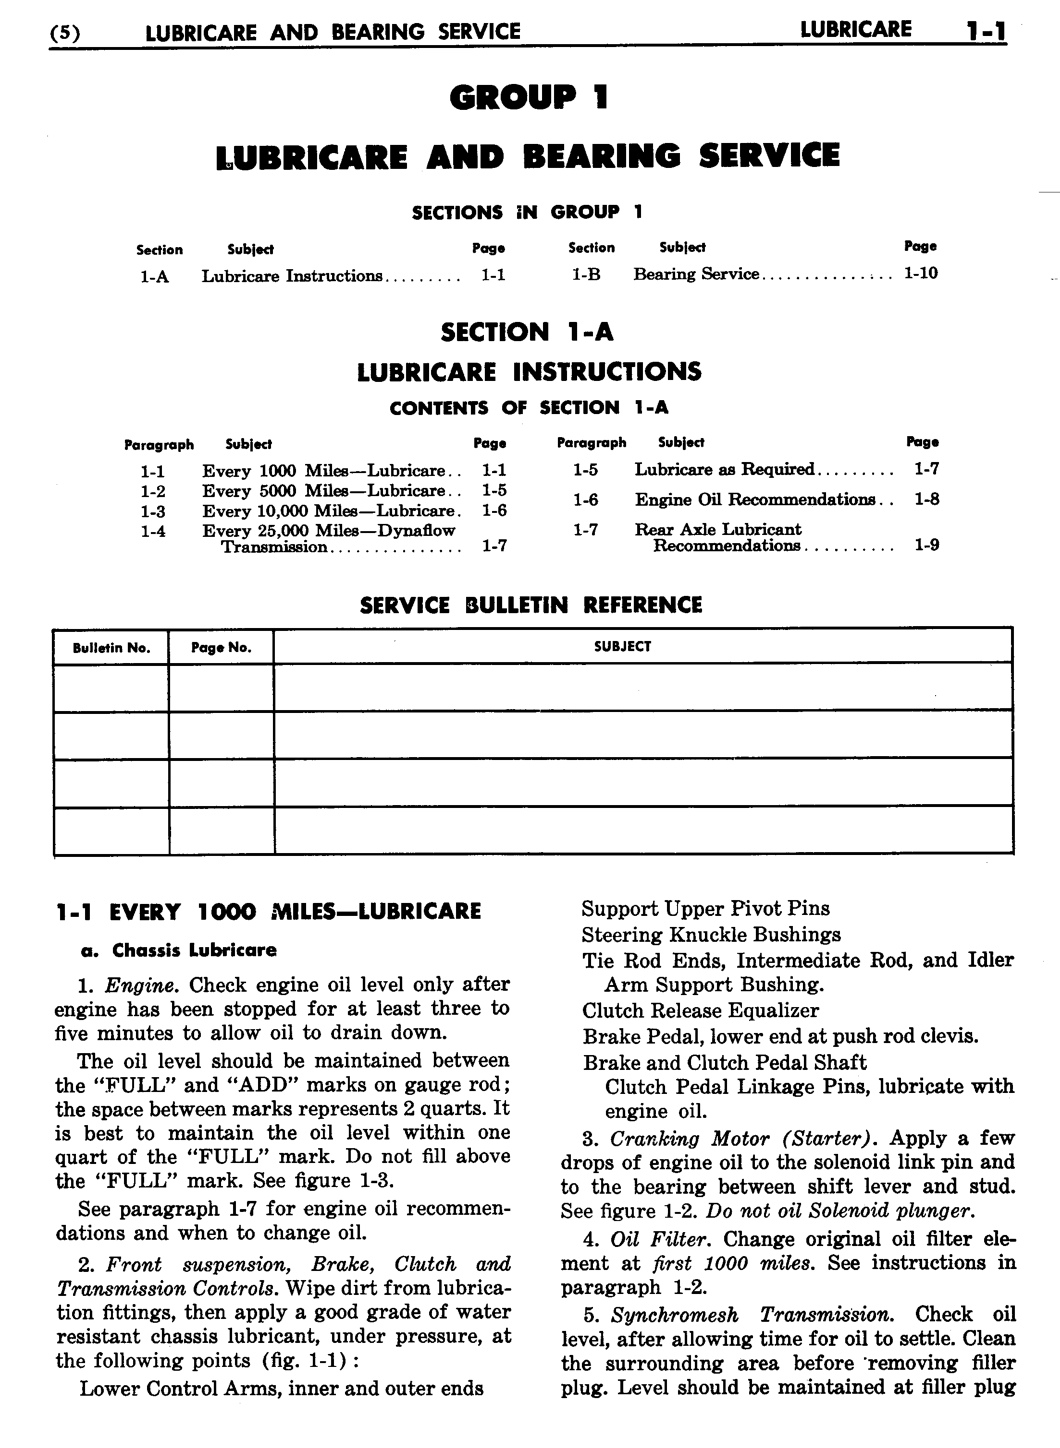 n_02 1955 Buick Shop Manual - Lubricare-001-001.jpg